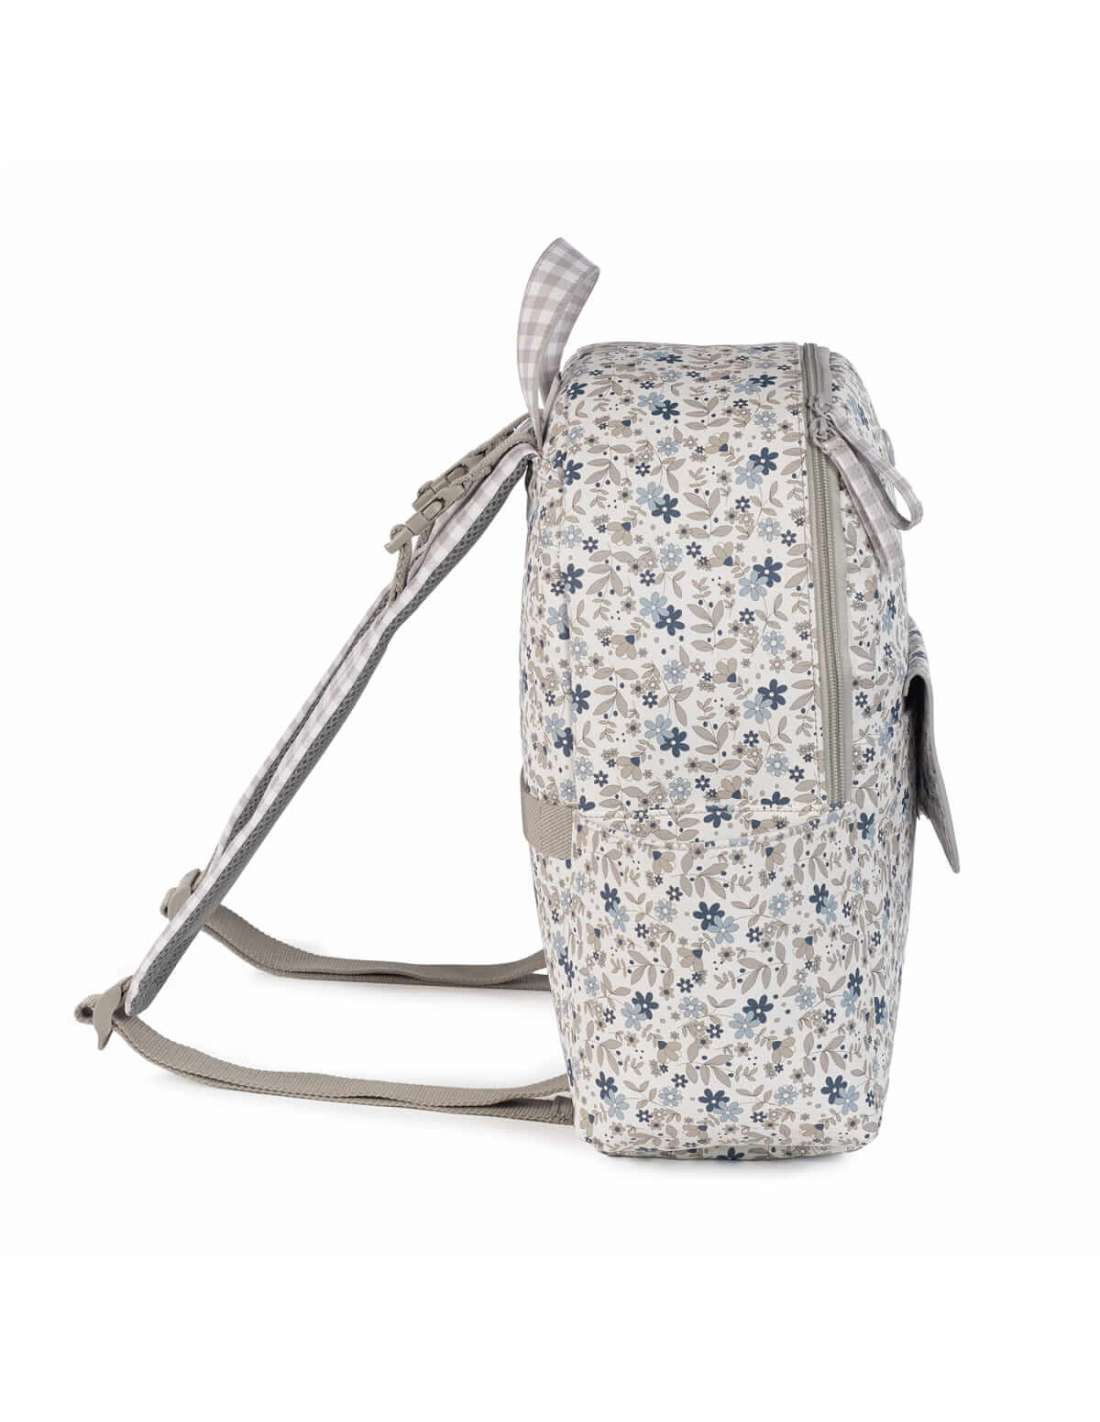 Pasito a Pasito Delia Floral Maternity Backpack - Blue